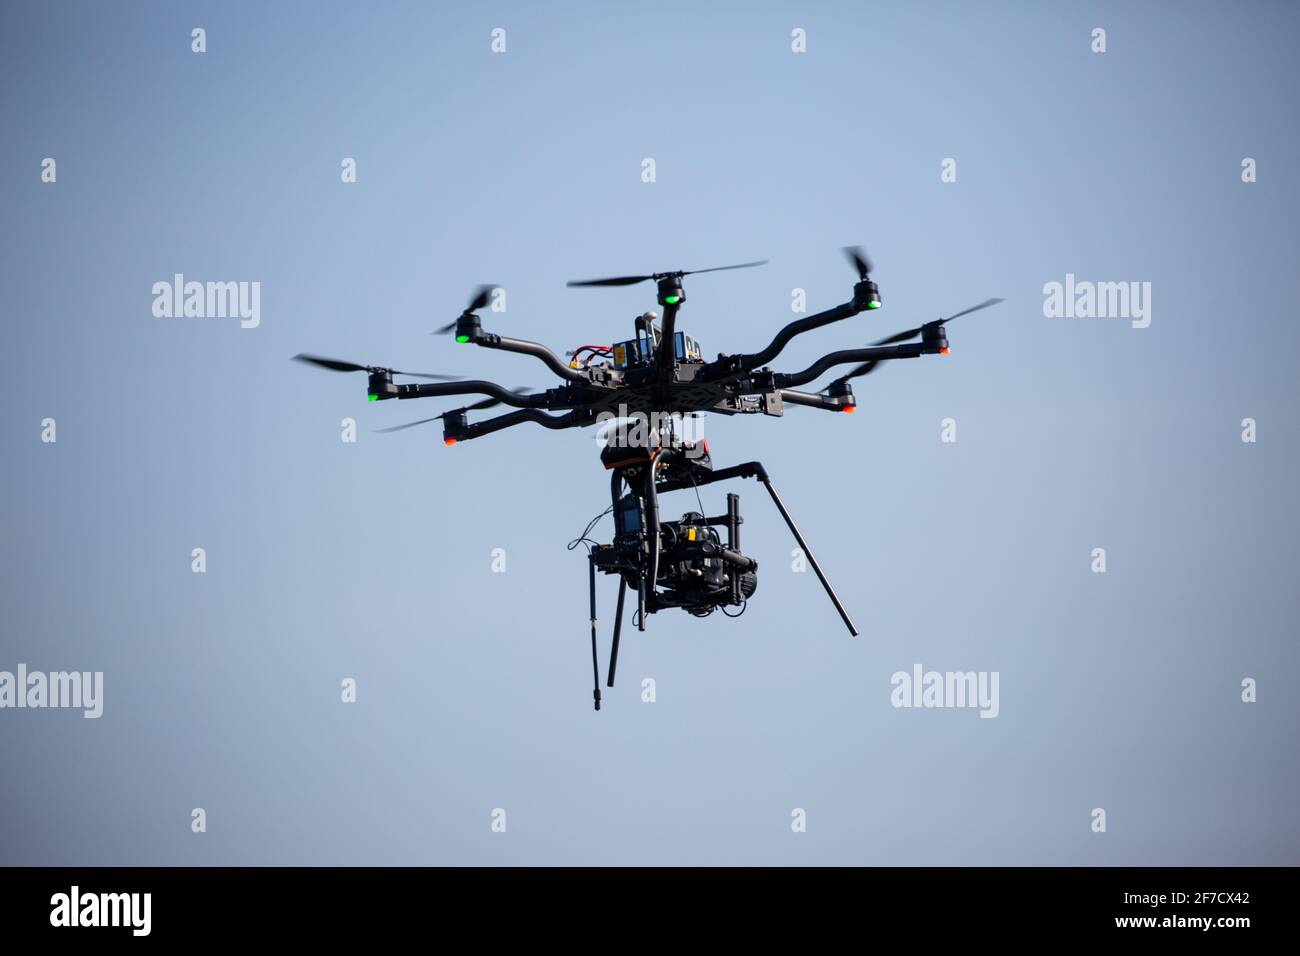 Stock Bild einer Octocopter Drohne (Multirotorflugzeug), die zum Filmen des  2021 Bootrennen auf dem River Great Ouse in Ely, Cambridgeshire, verwendet  wurde. Zwischen Cambridge und Oxford University hat die Drohne 8 Motoren